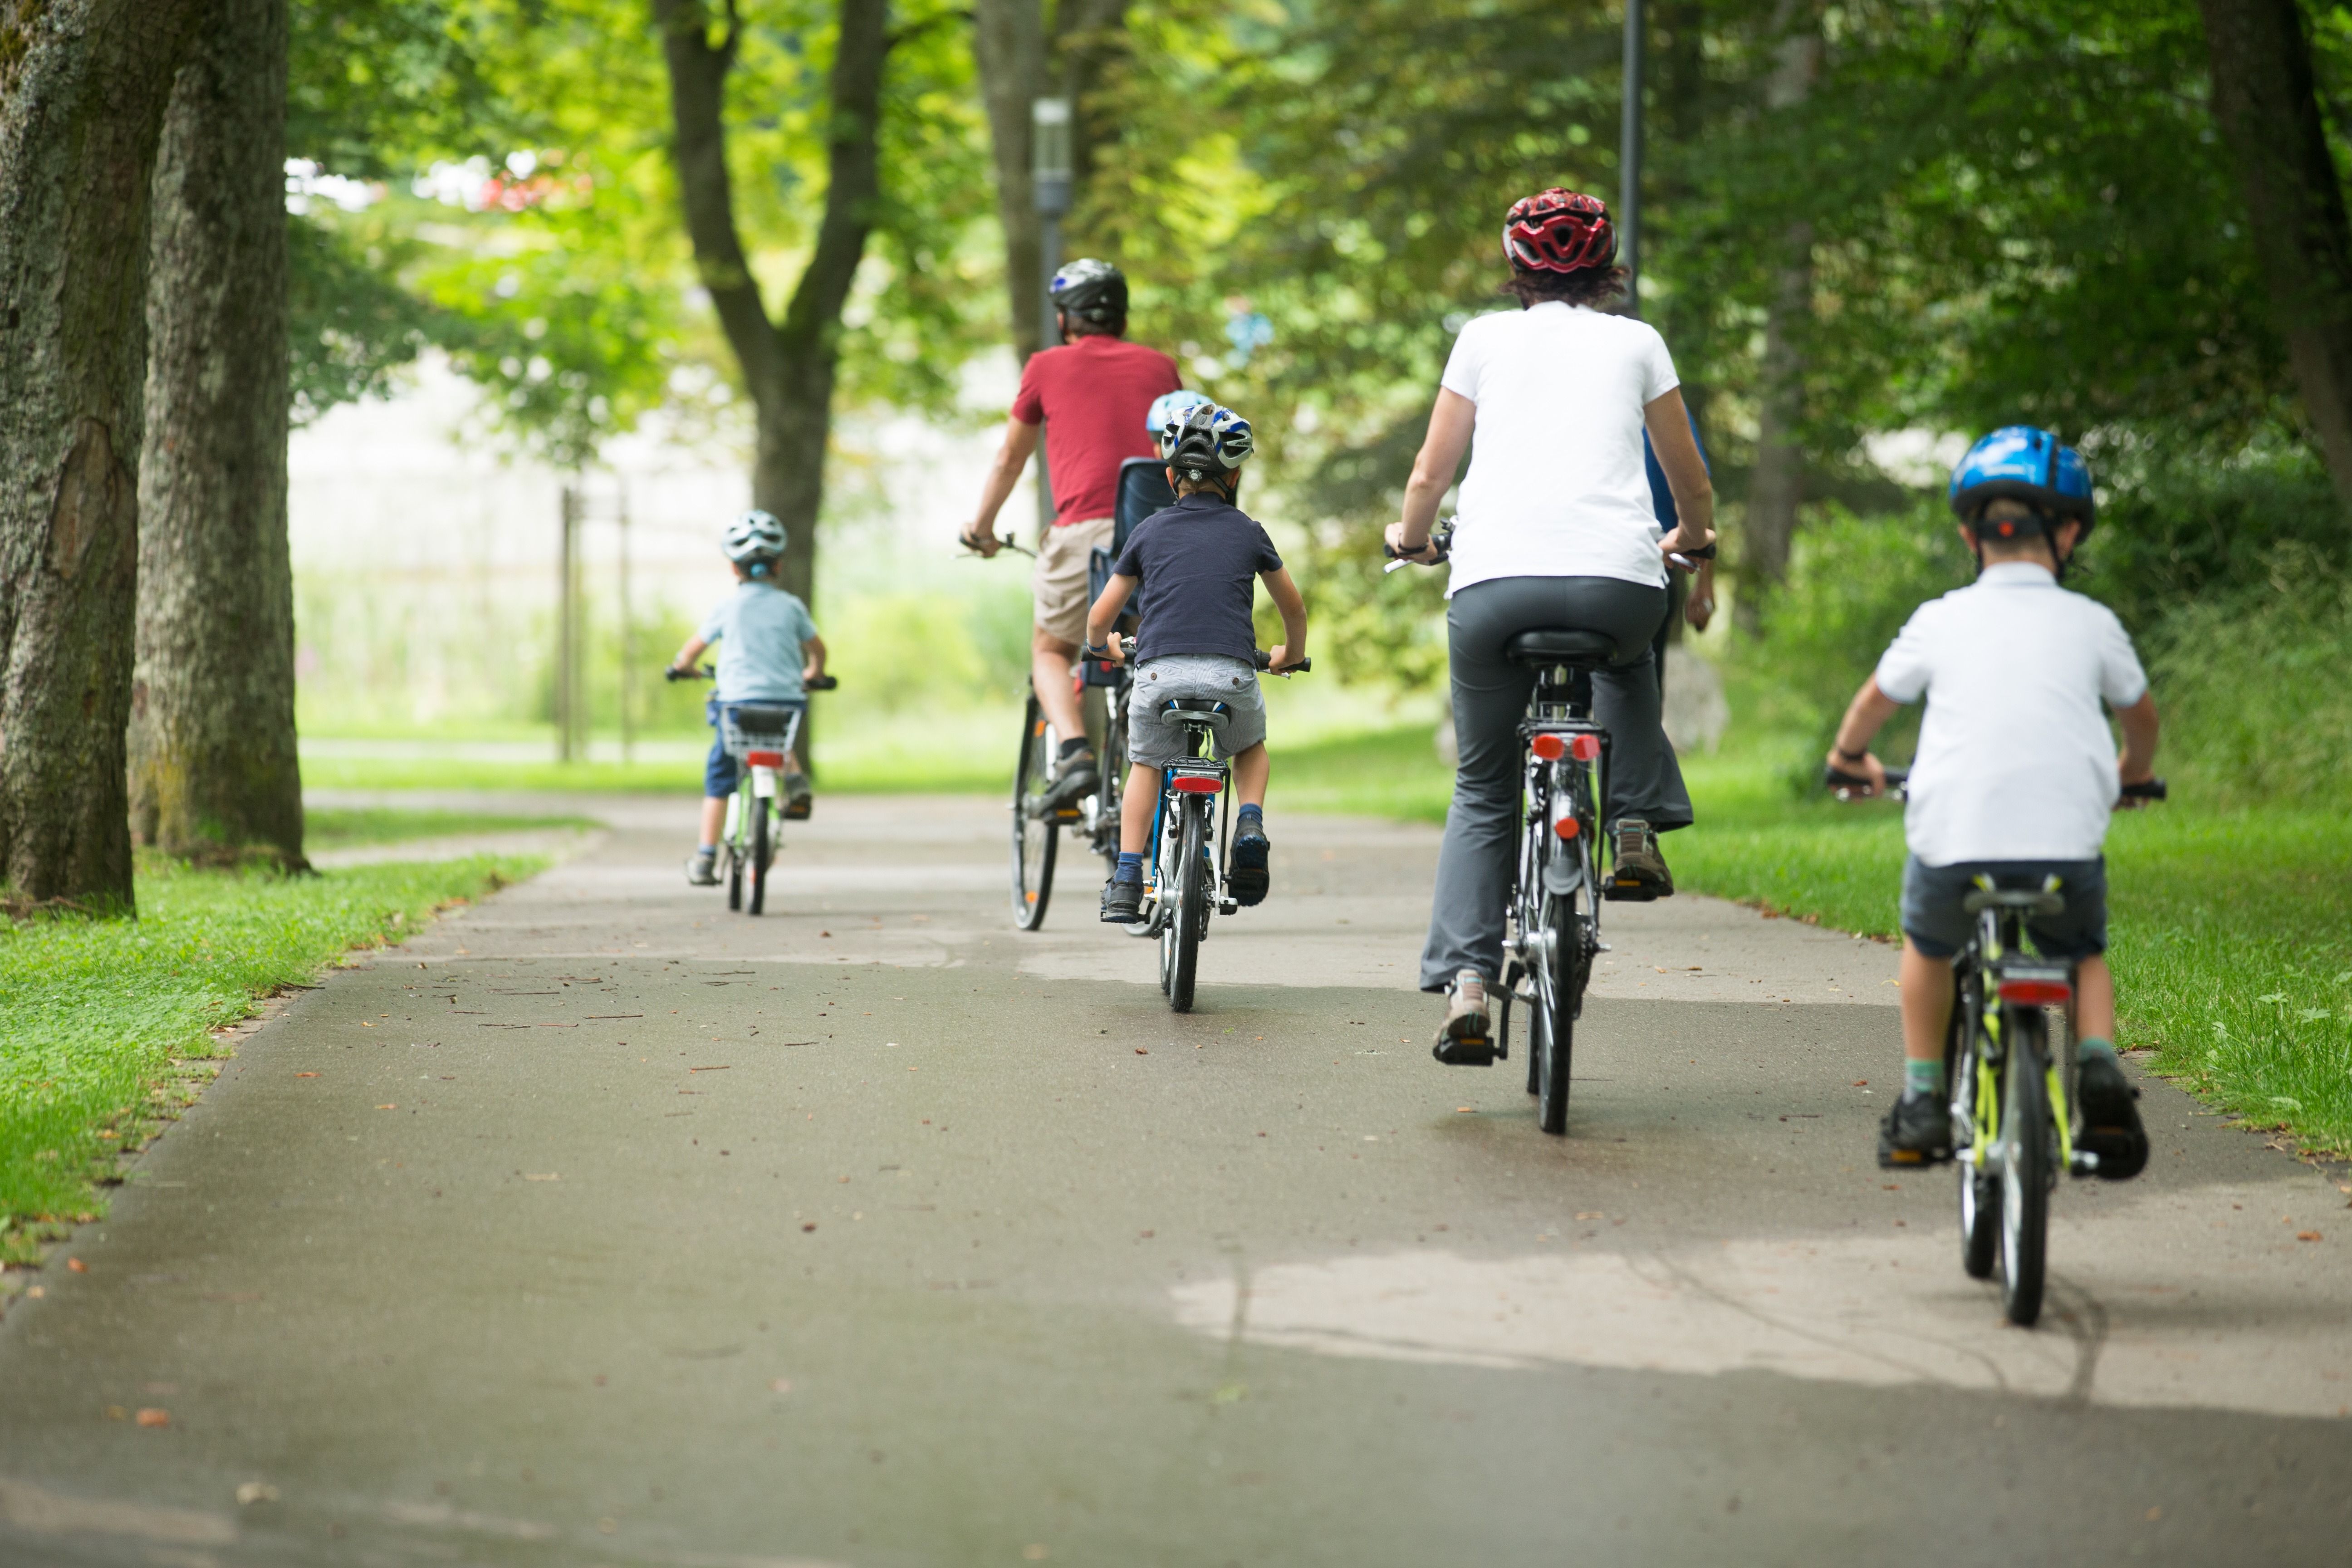 Eine Familie die auf dem Fahrrad einen Weg entlang fährt